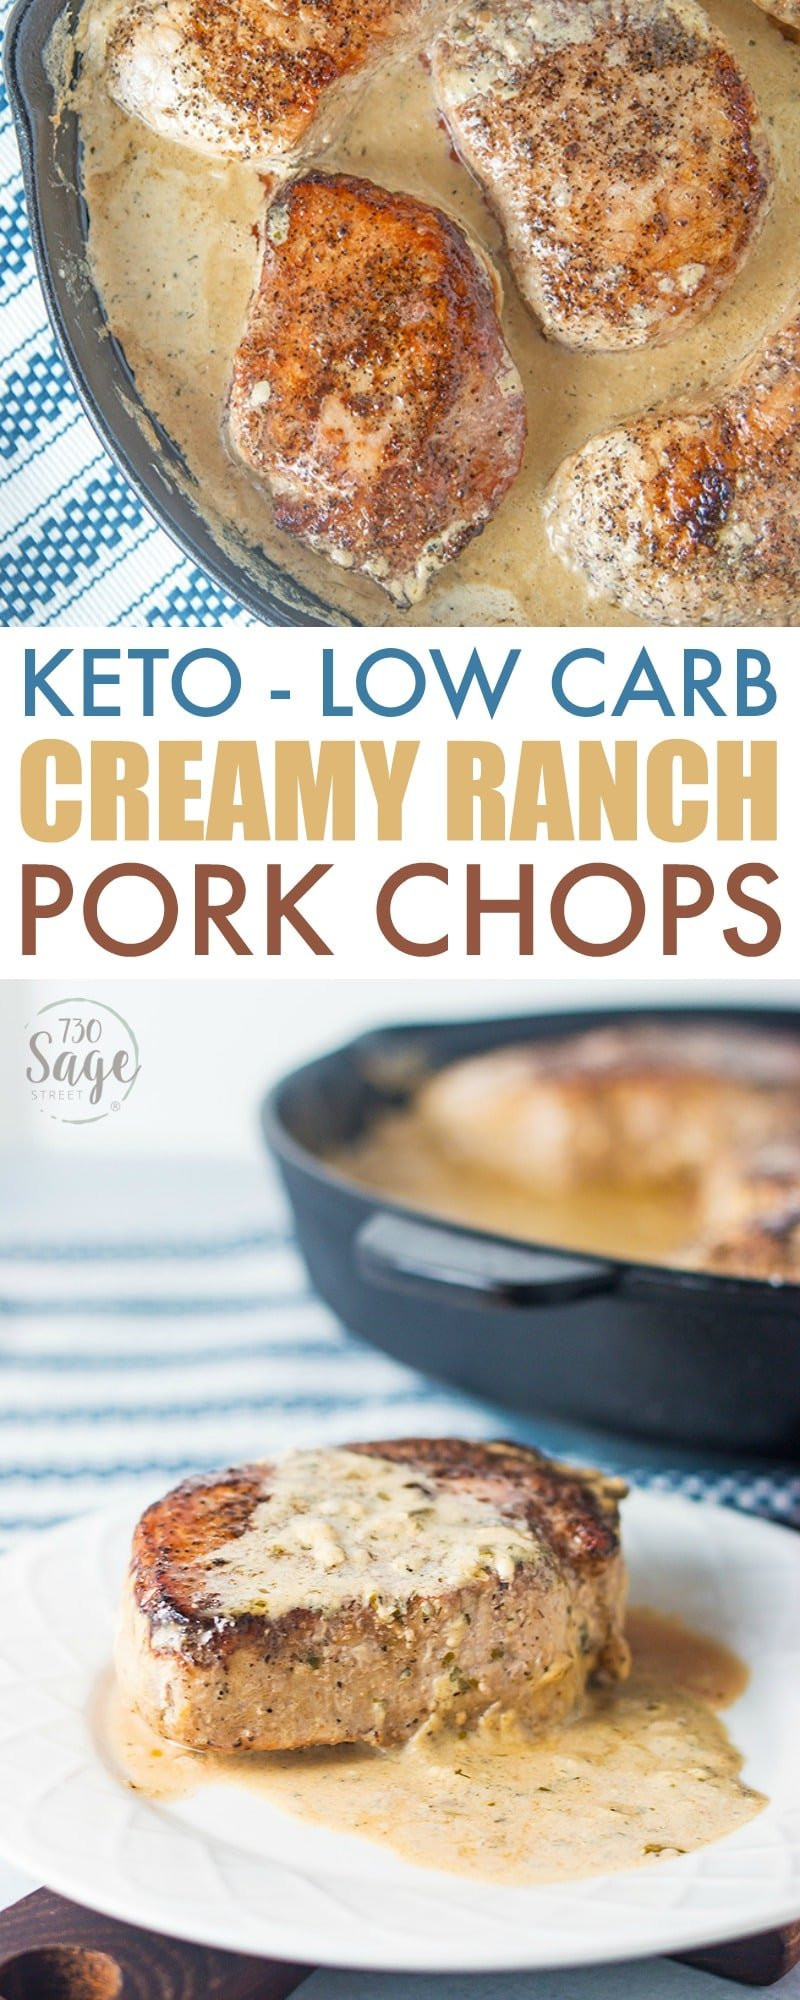 Keto Diet Pork Chops
 Keto Pork Chops Recipe Creamy Ranch Pork Chops 730